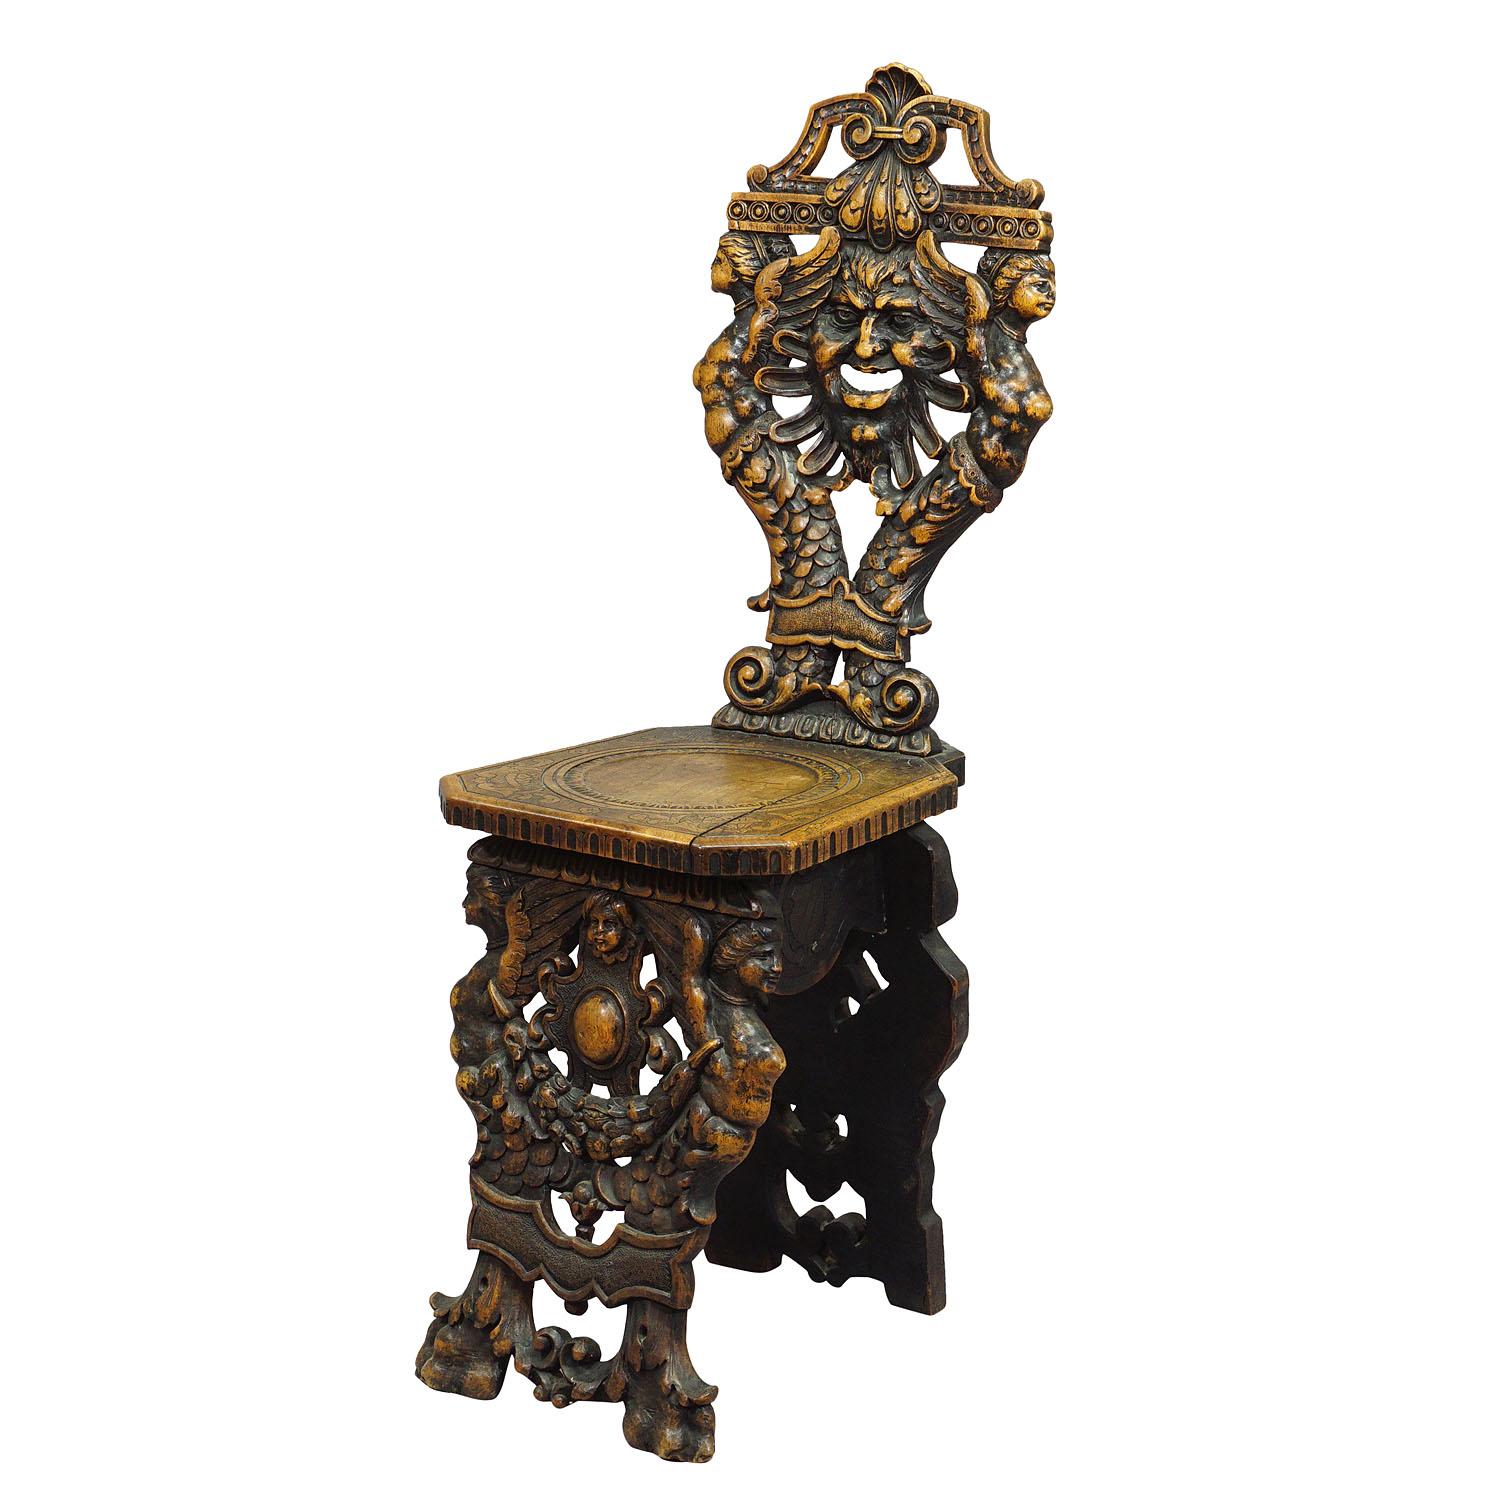 Magnifique chaise en bois de chêne sculptée à la main - dossier et pieds sculptés dans le style de la Renaissance avec de fantastiques grimaces, gargouilles et sculptures florales, Italie vers 1860.

Dimensions : largeur : 13.39